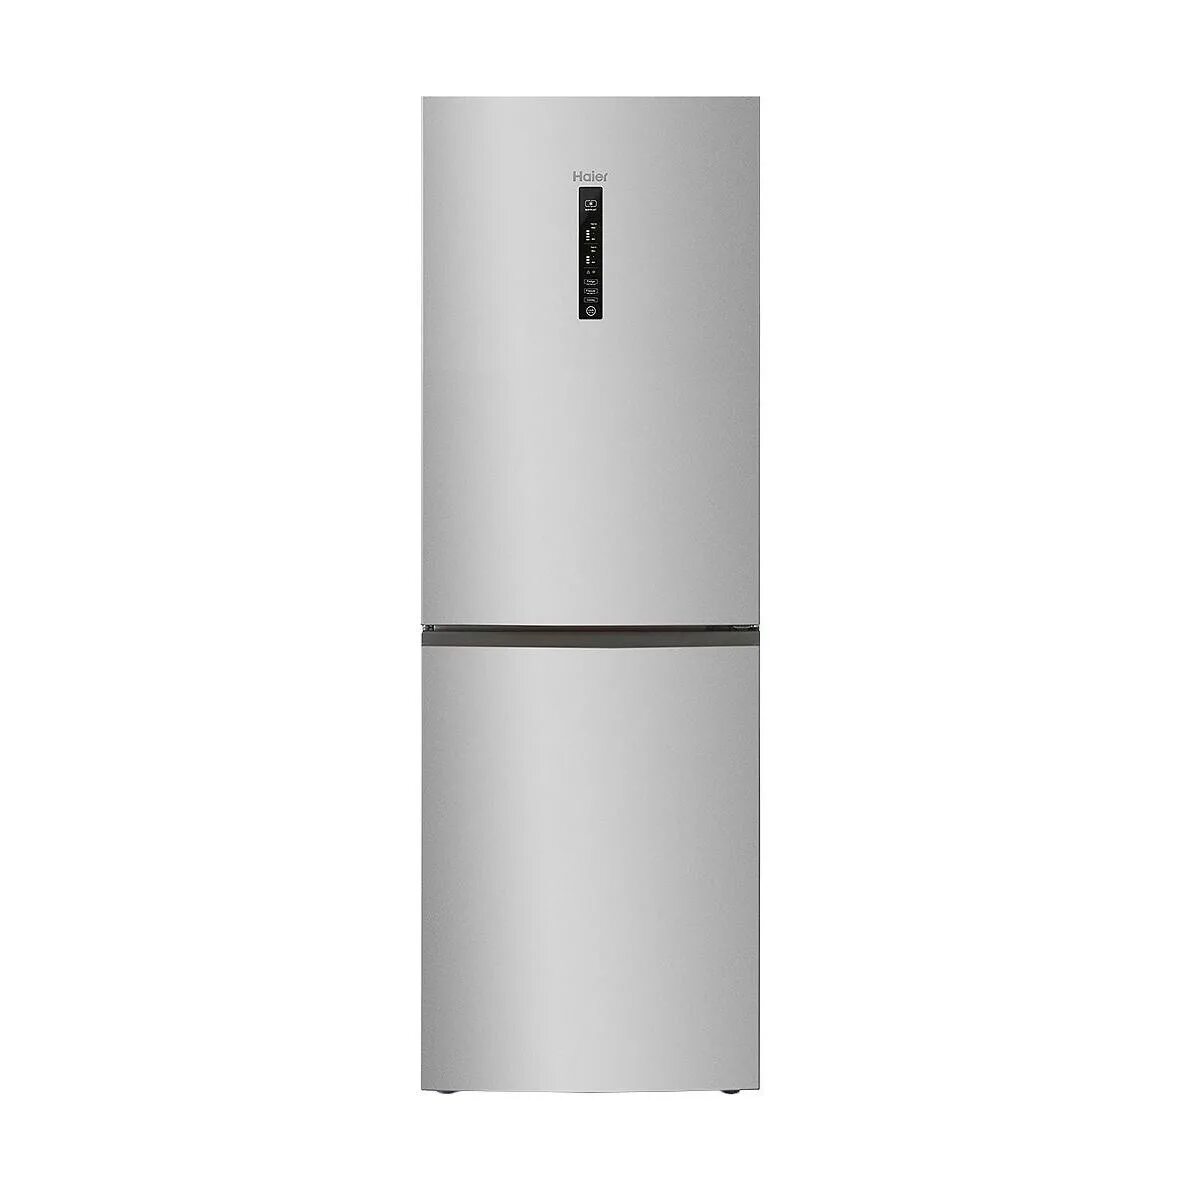 Холодильник Haier cef537asd. Холодильник Samsung rl4353ebasl/WT. Холодильник Haier c3f532cmsg. Холодильник Haier c3f532cmsg, серебристый.